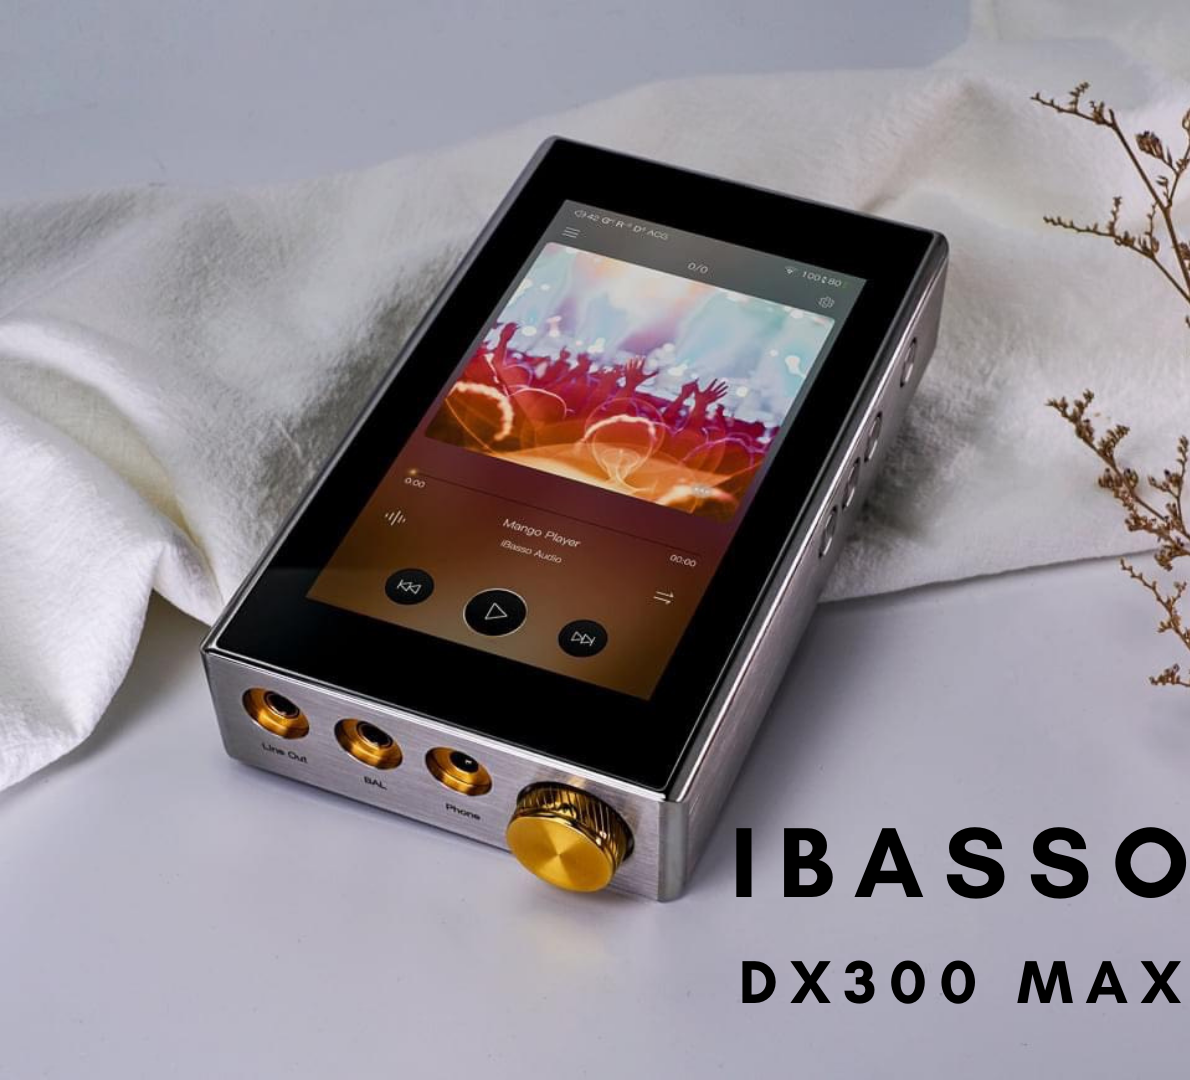 Giới  thiệu iBasso DX300 MAX: Khủng cả nghĩa đen lẫn nghĩa bóng 